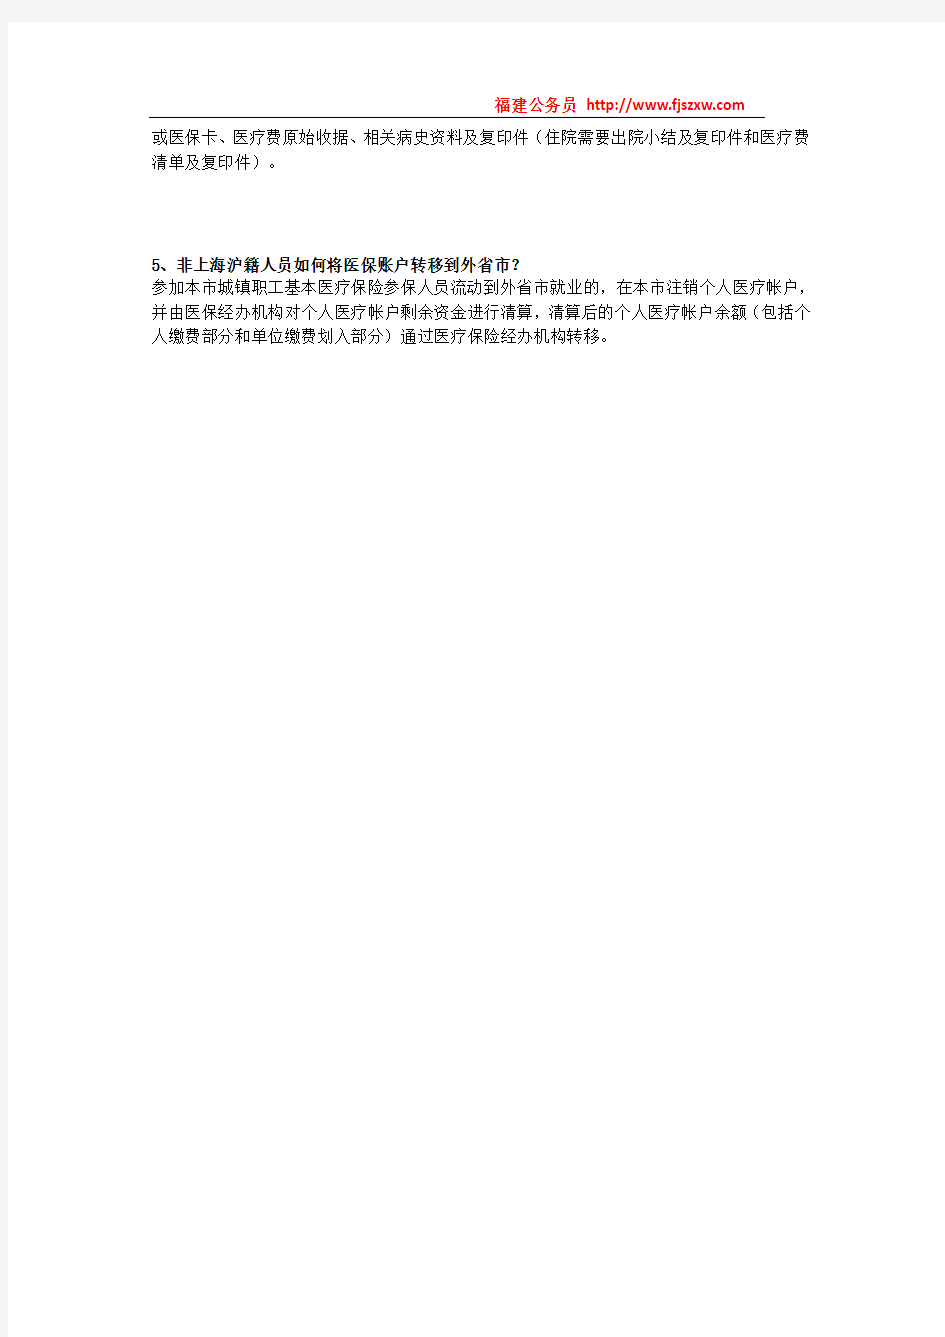 关于非上海沪籍人员参加上海市城镇职工社会保险的政策问答